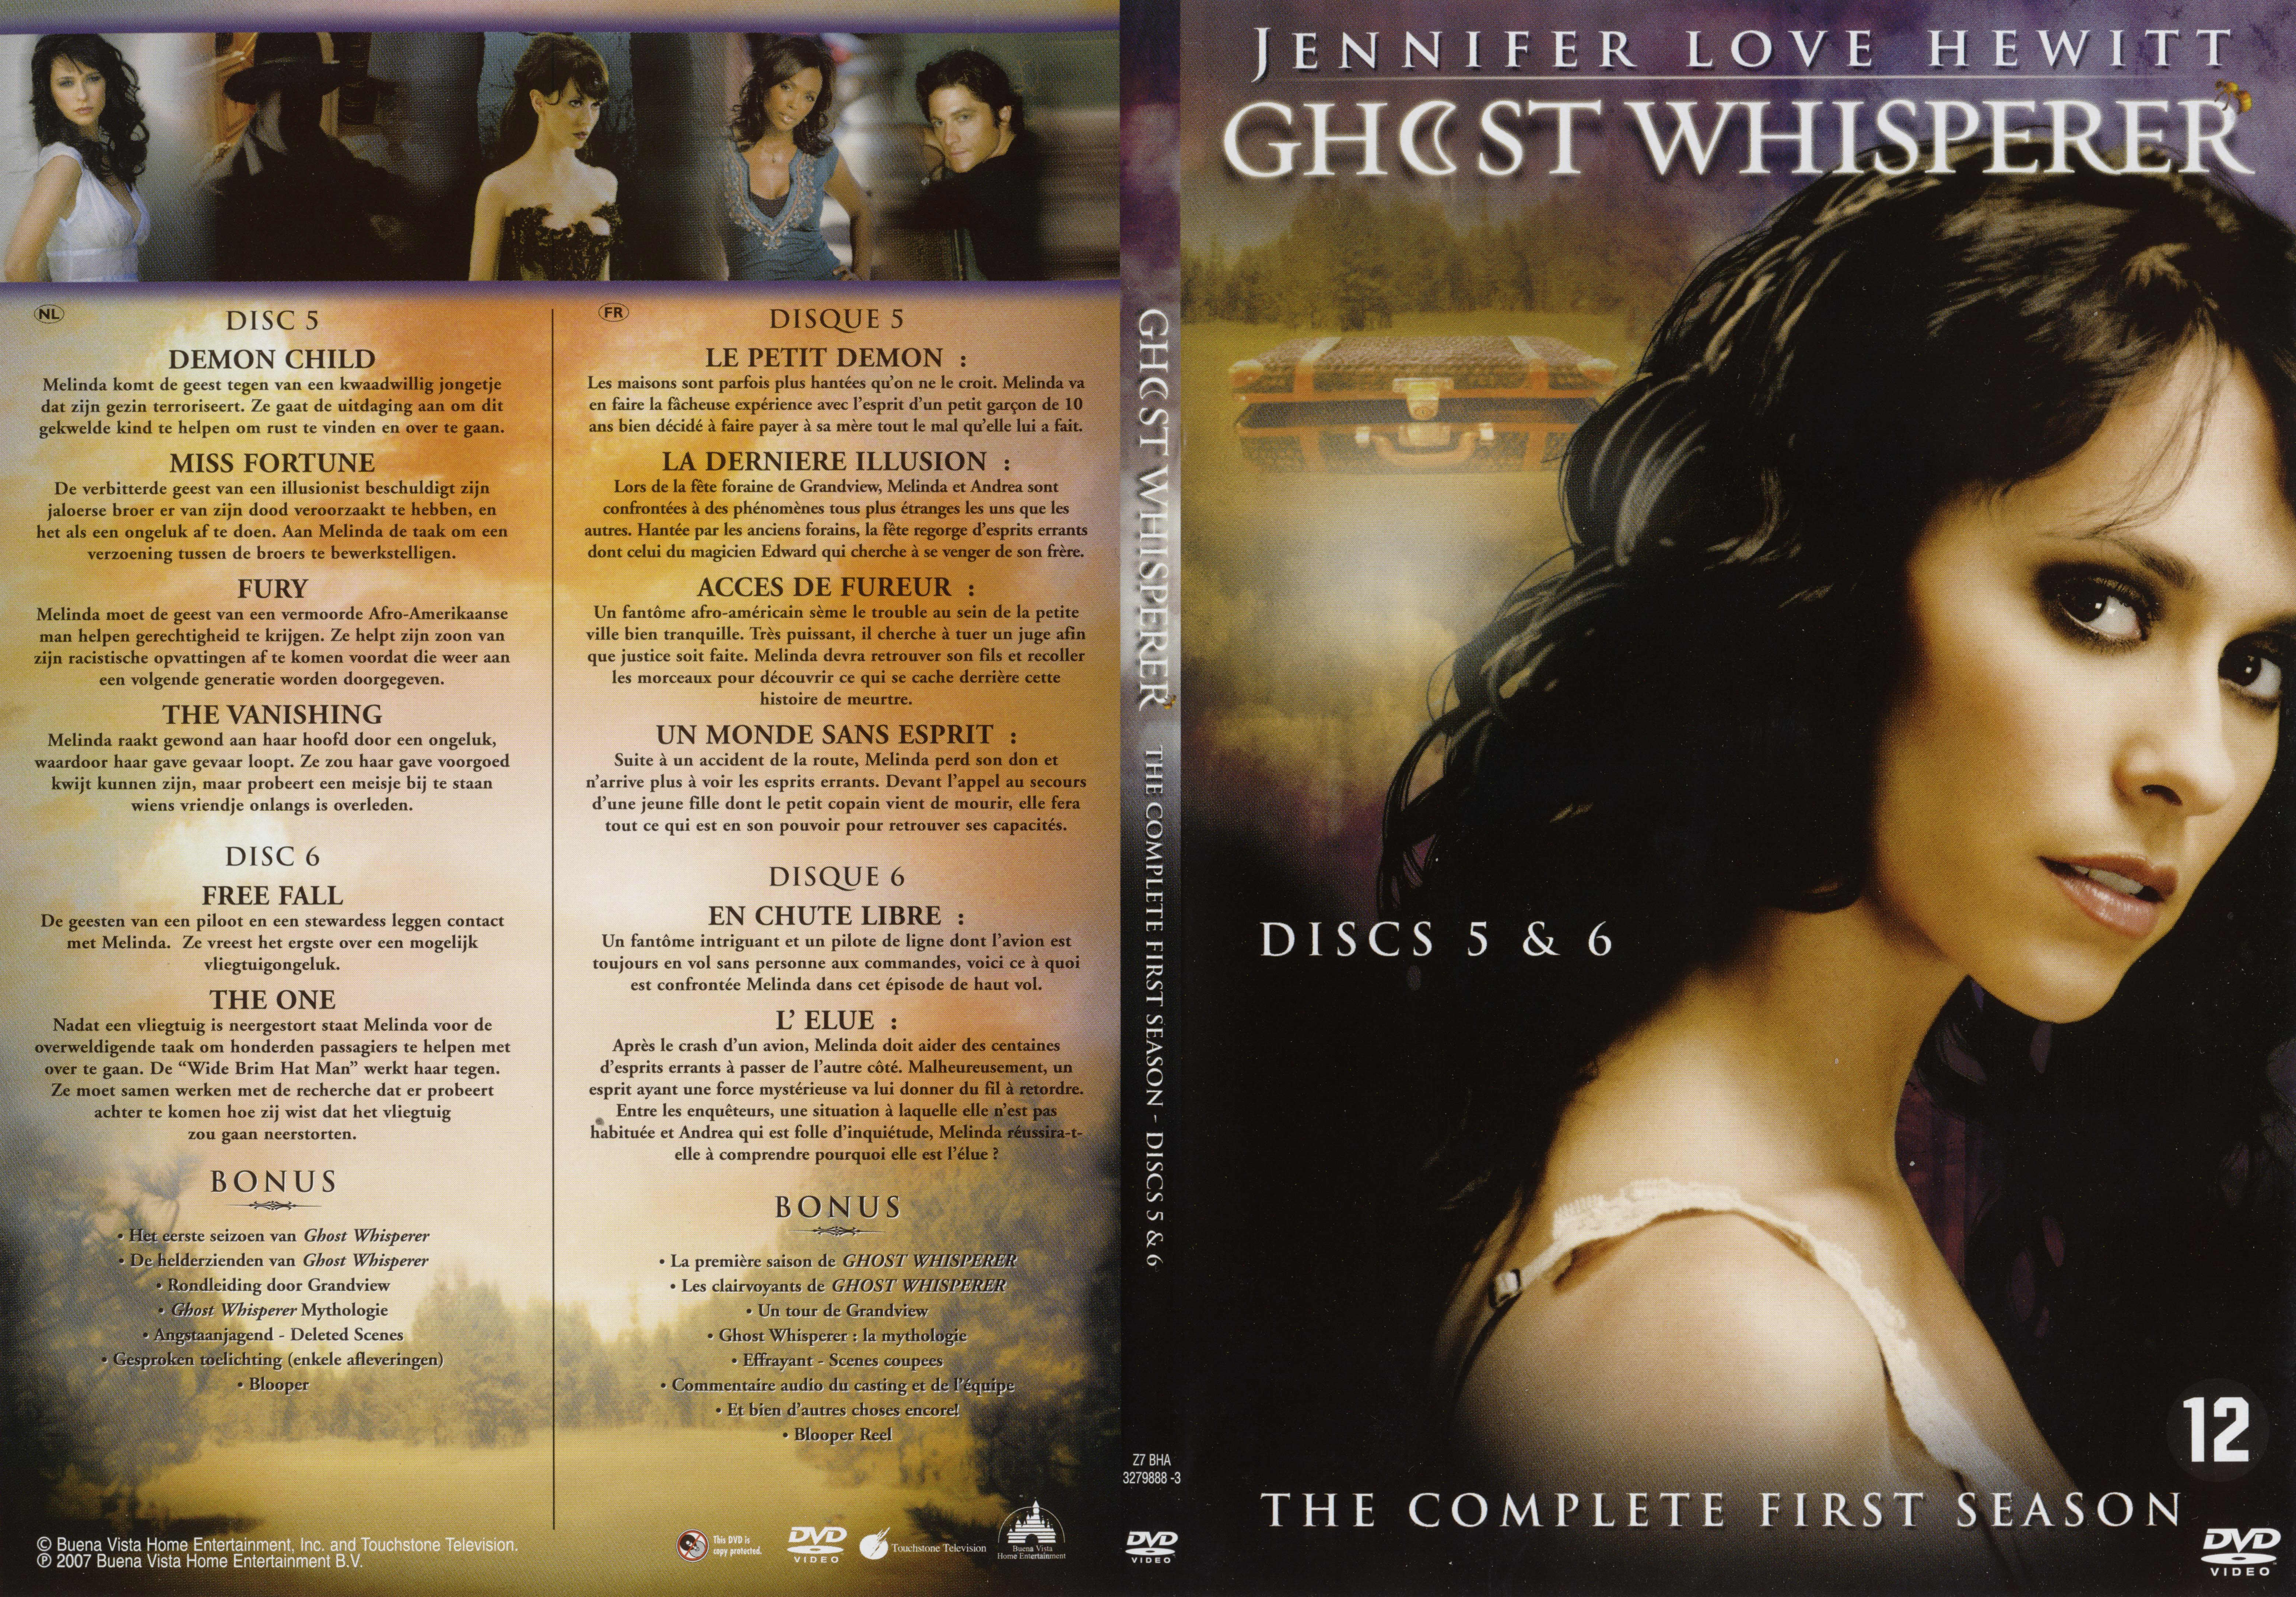 Jaquette DVD Ghost whisperer Saison 1 DVD 3